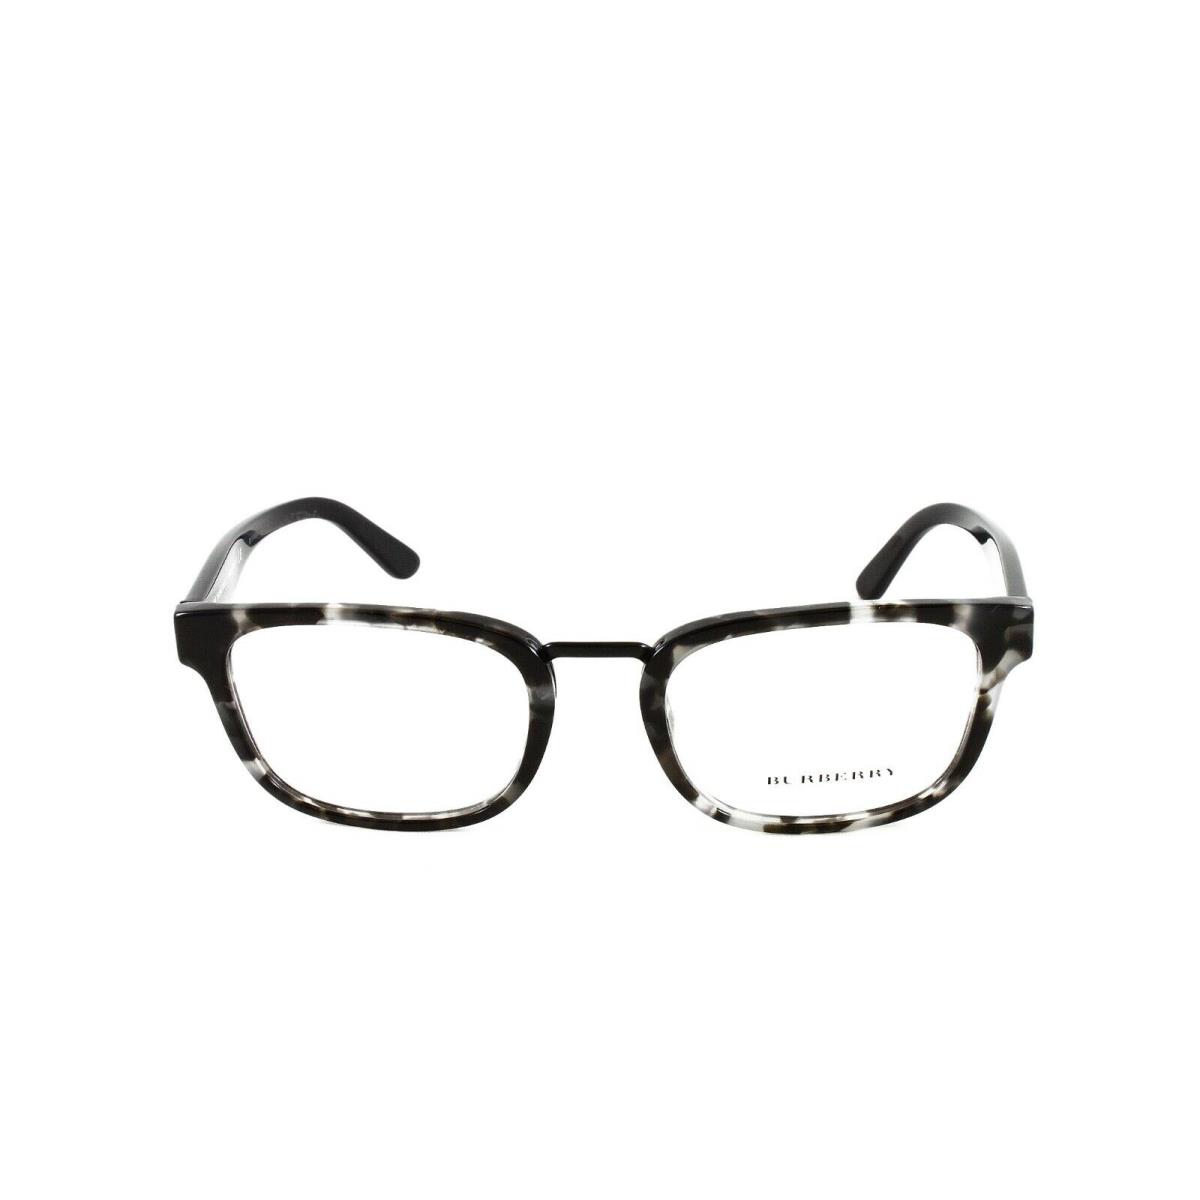 Burberry eyeglasses Color - Gray Frame 0